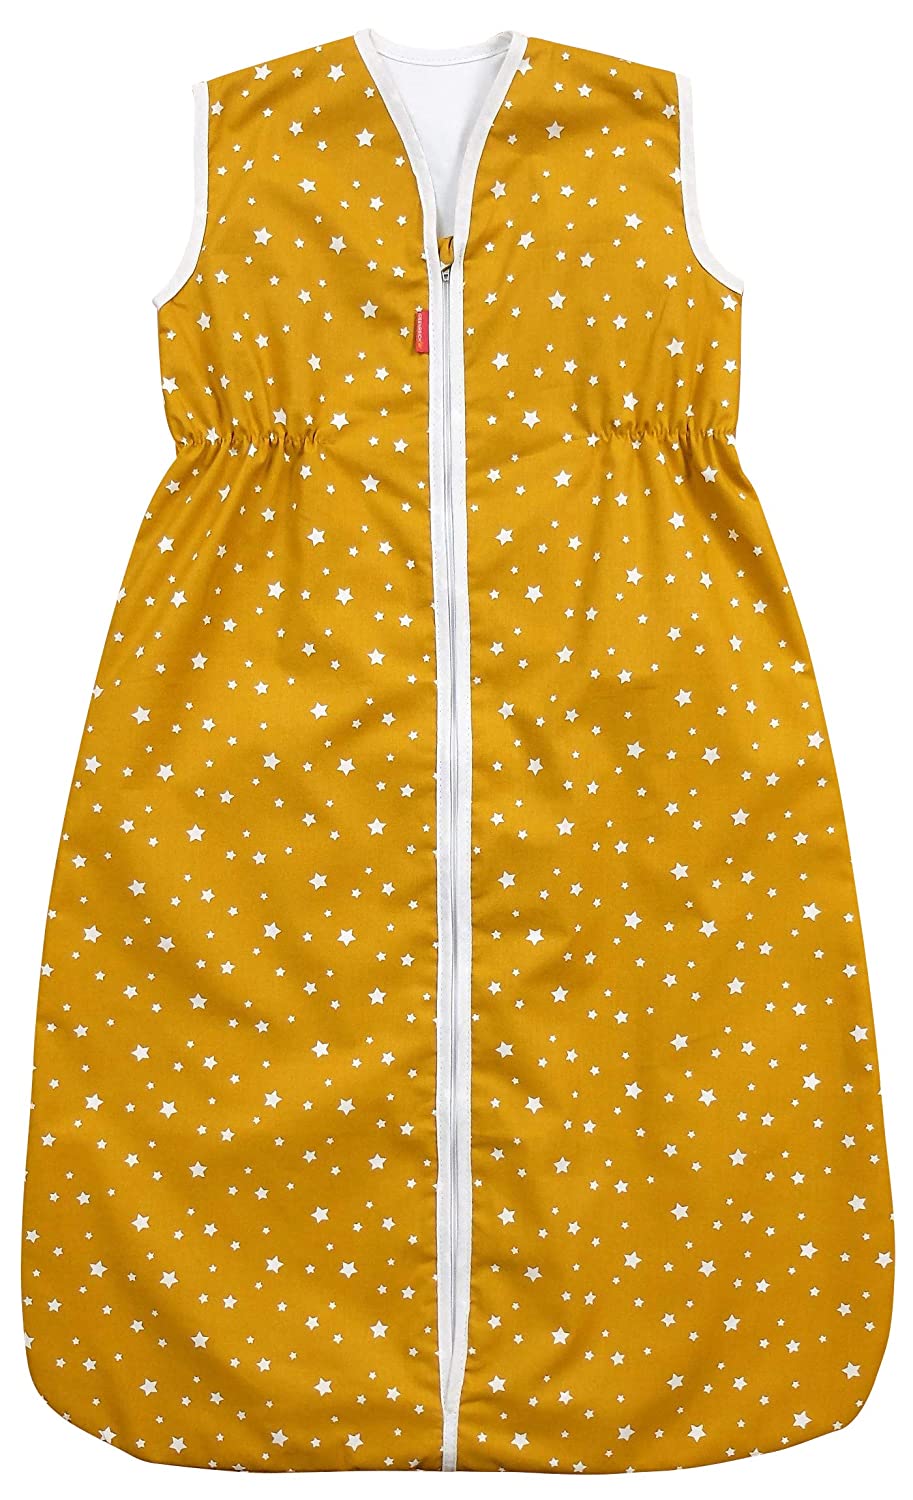 Ideenreich 2559 IDEENreich Sleeping Bag 110 Stars Mustard, Multicoloured